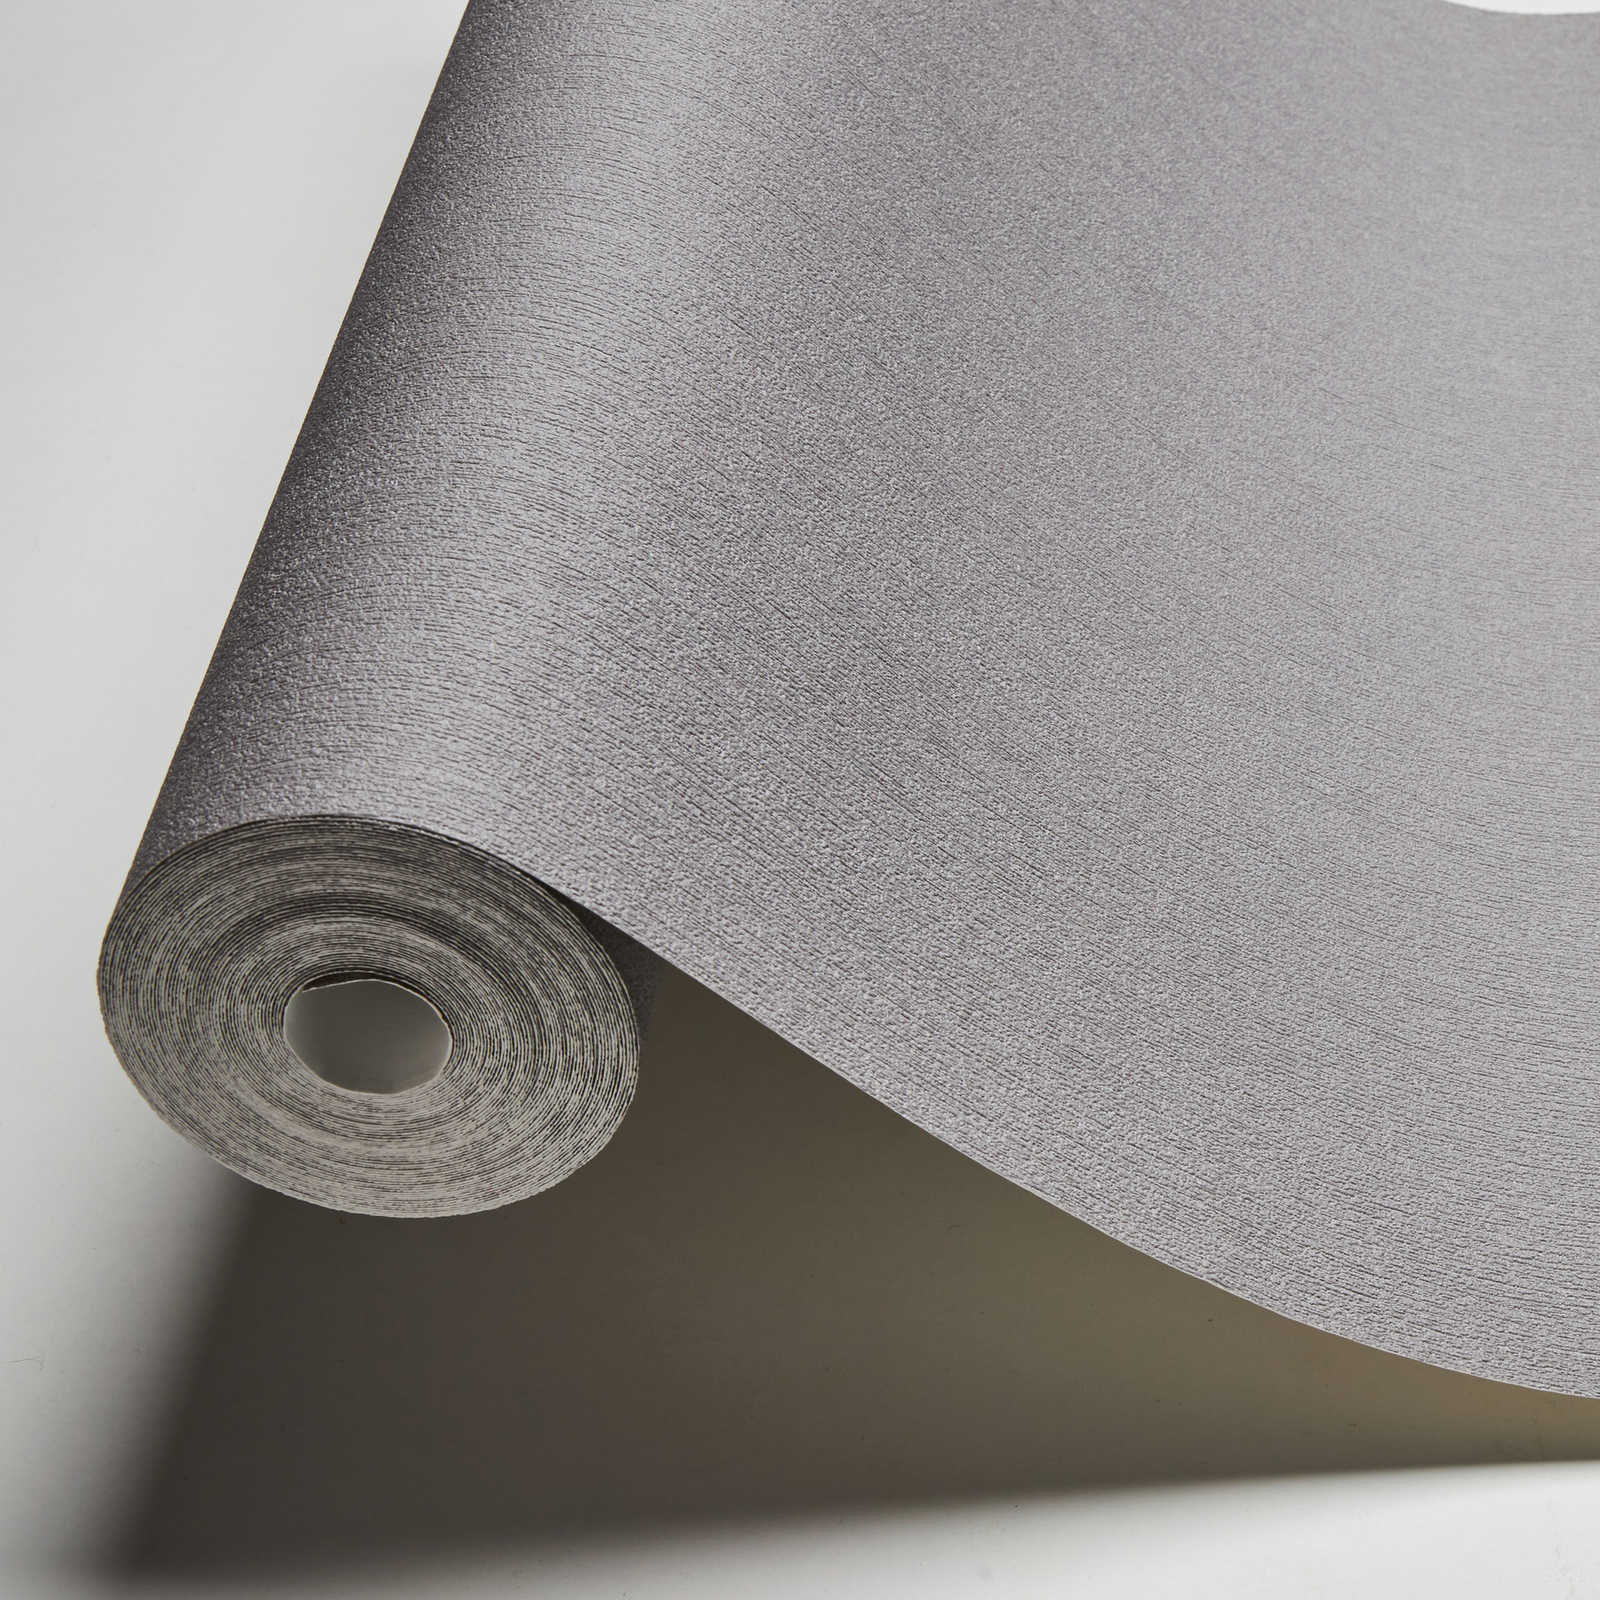             Karl LAGERFELD behangpapier monochroom met textuur - grijs
        